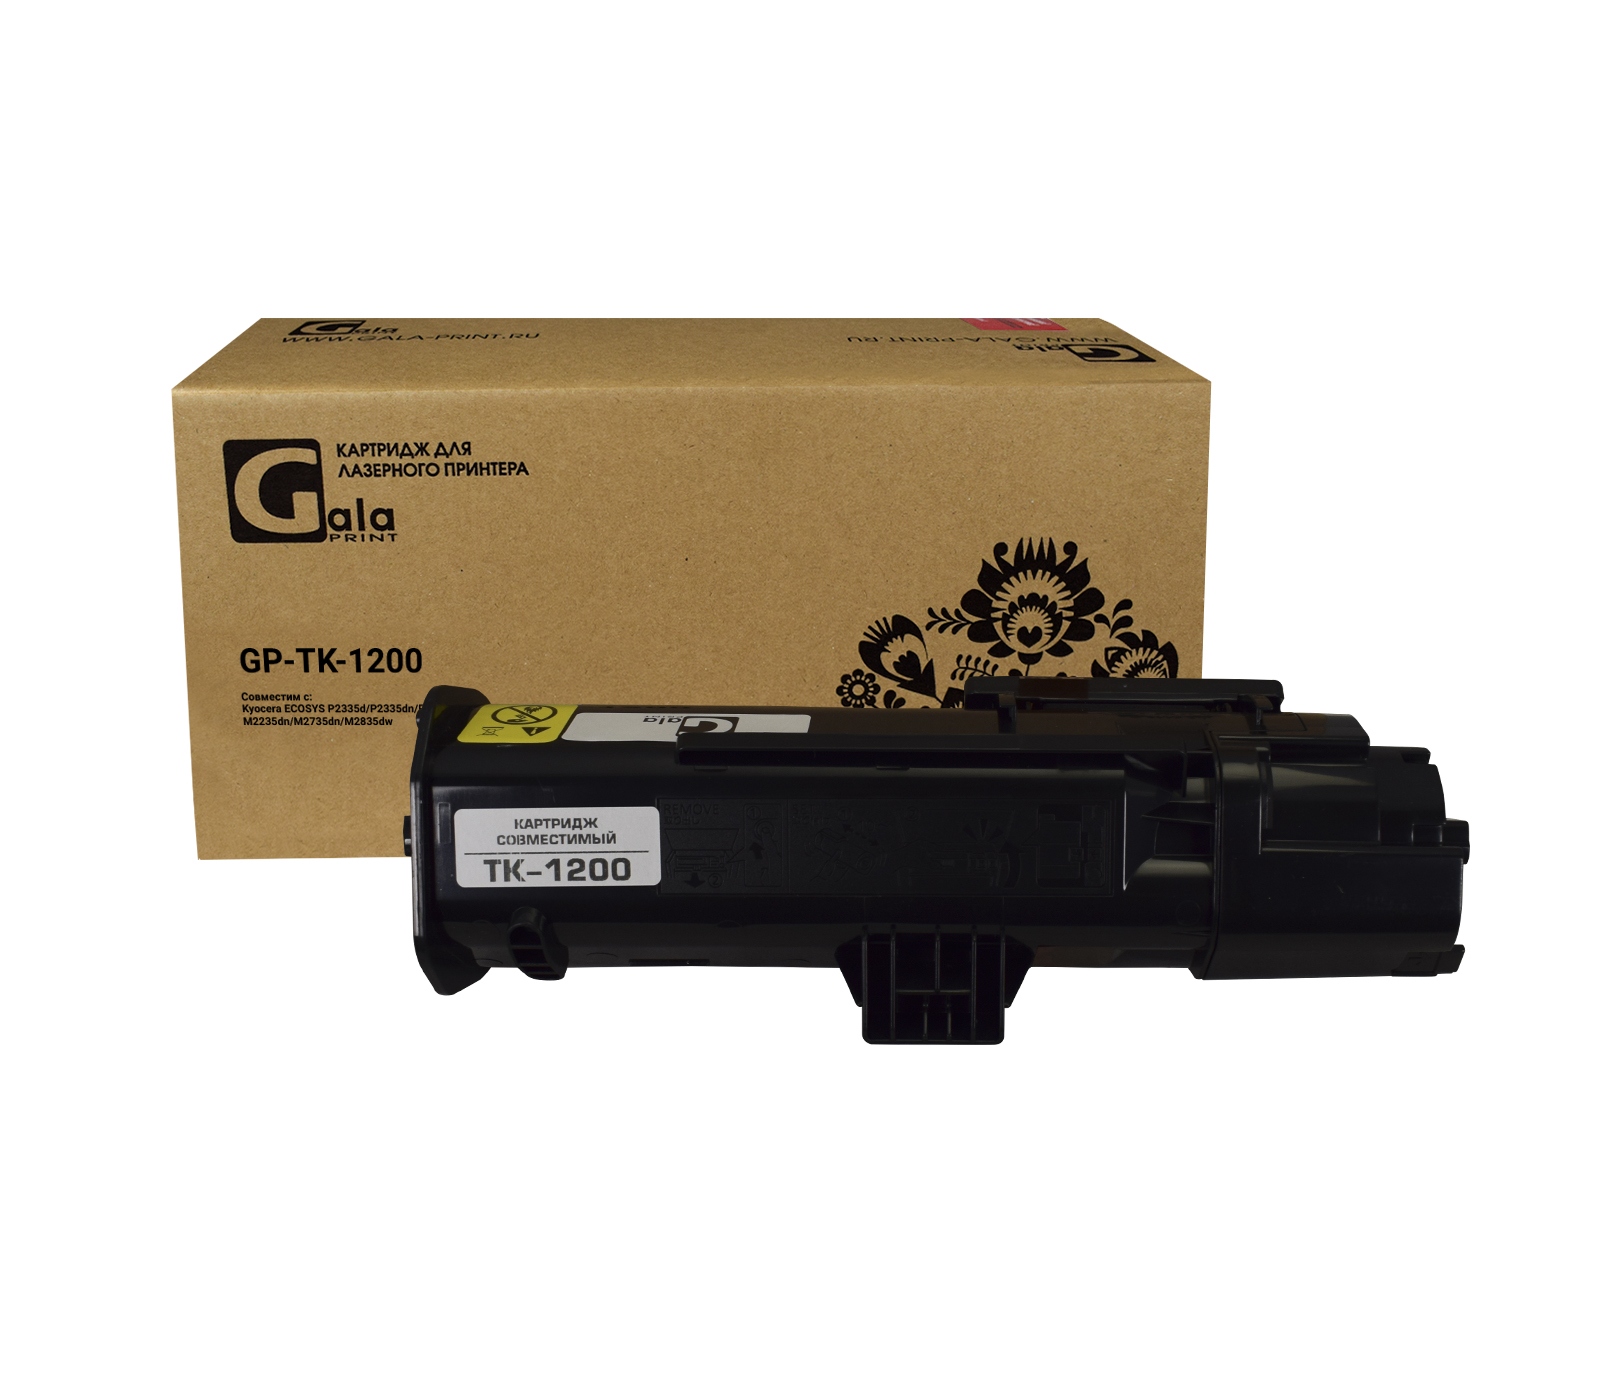 Картридж GP-TK-1200 для принтеров Kyocera P2335d/P2335dn/P2335dw/M2235dn/M2735dn/M2835dw 3000 копий GalaPrint